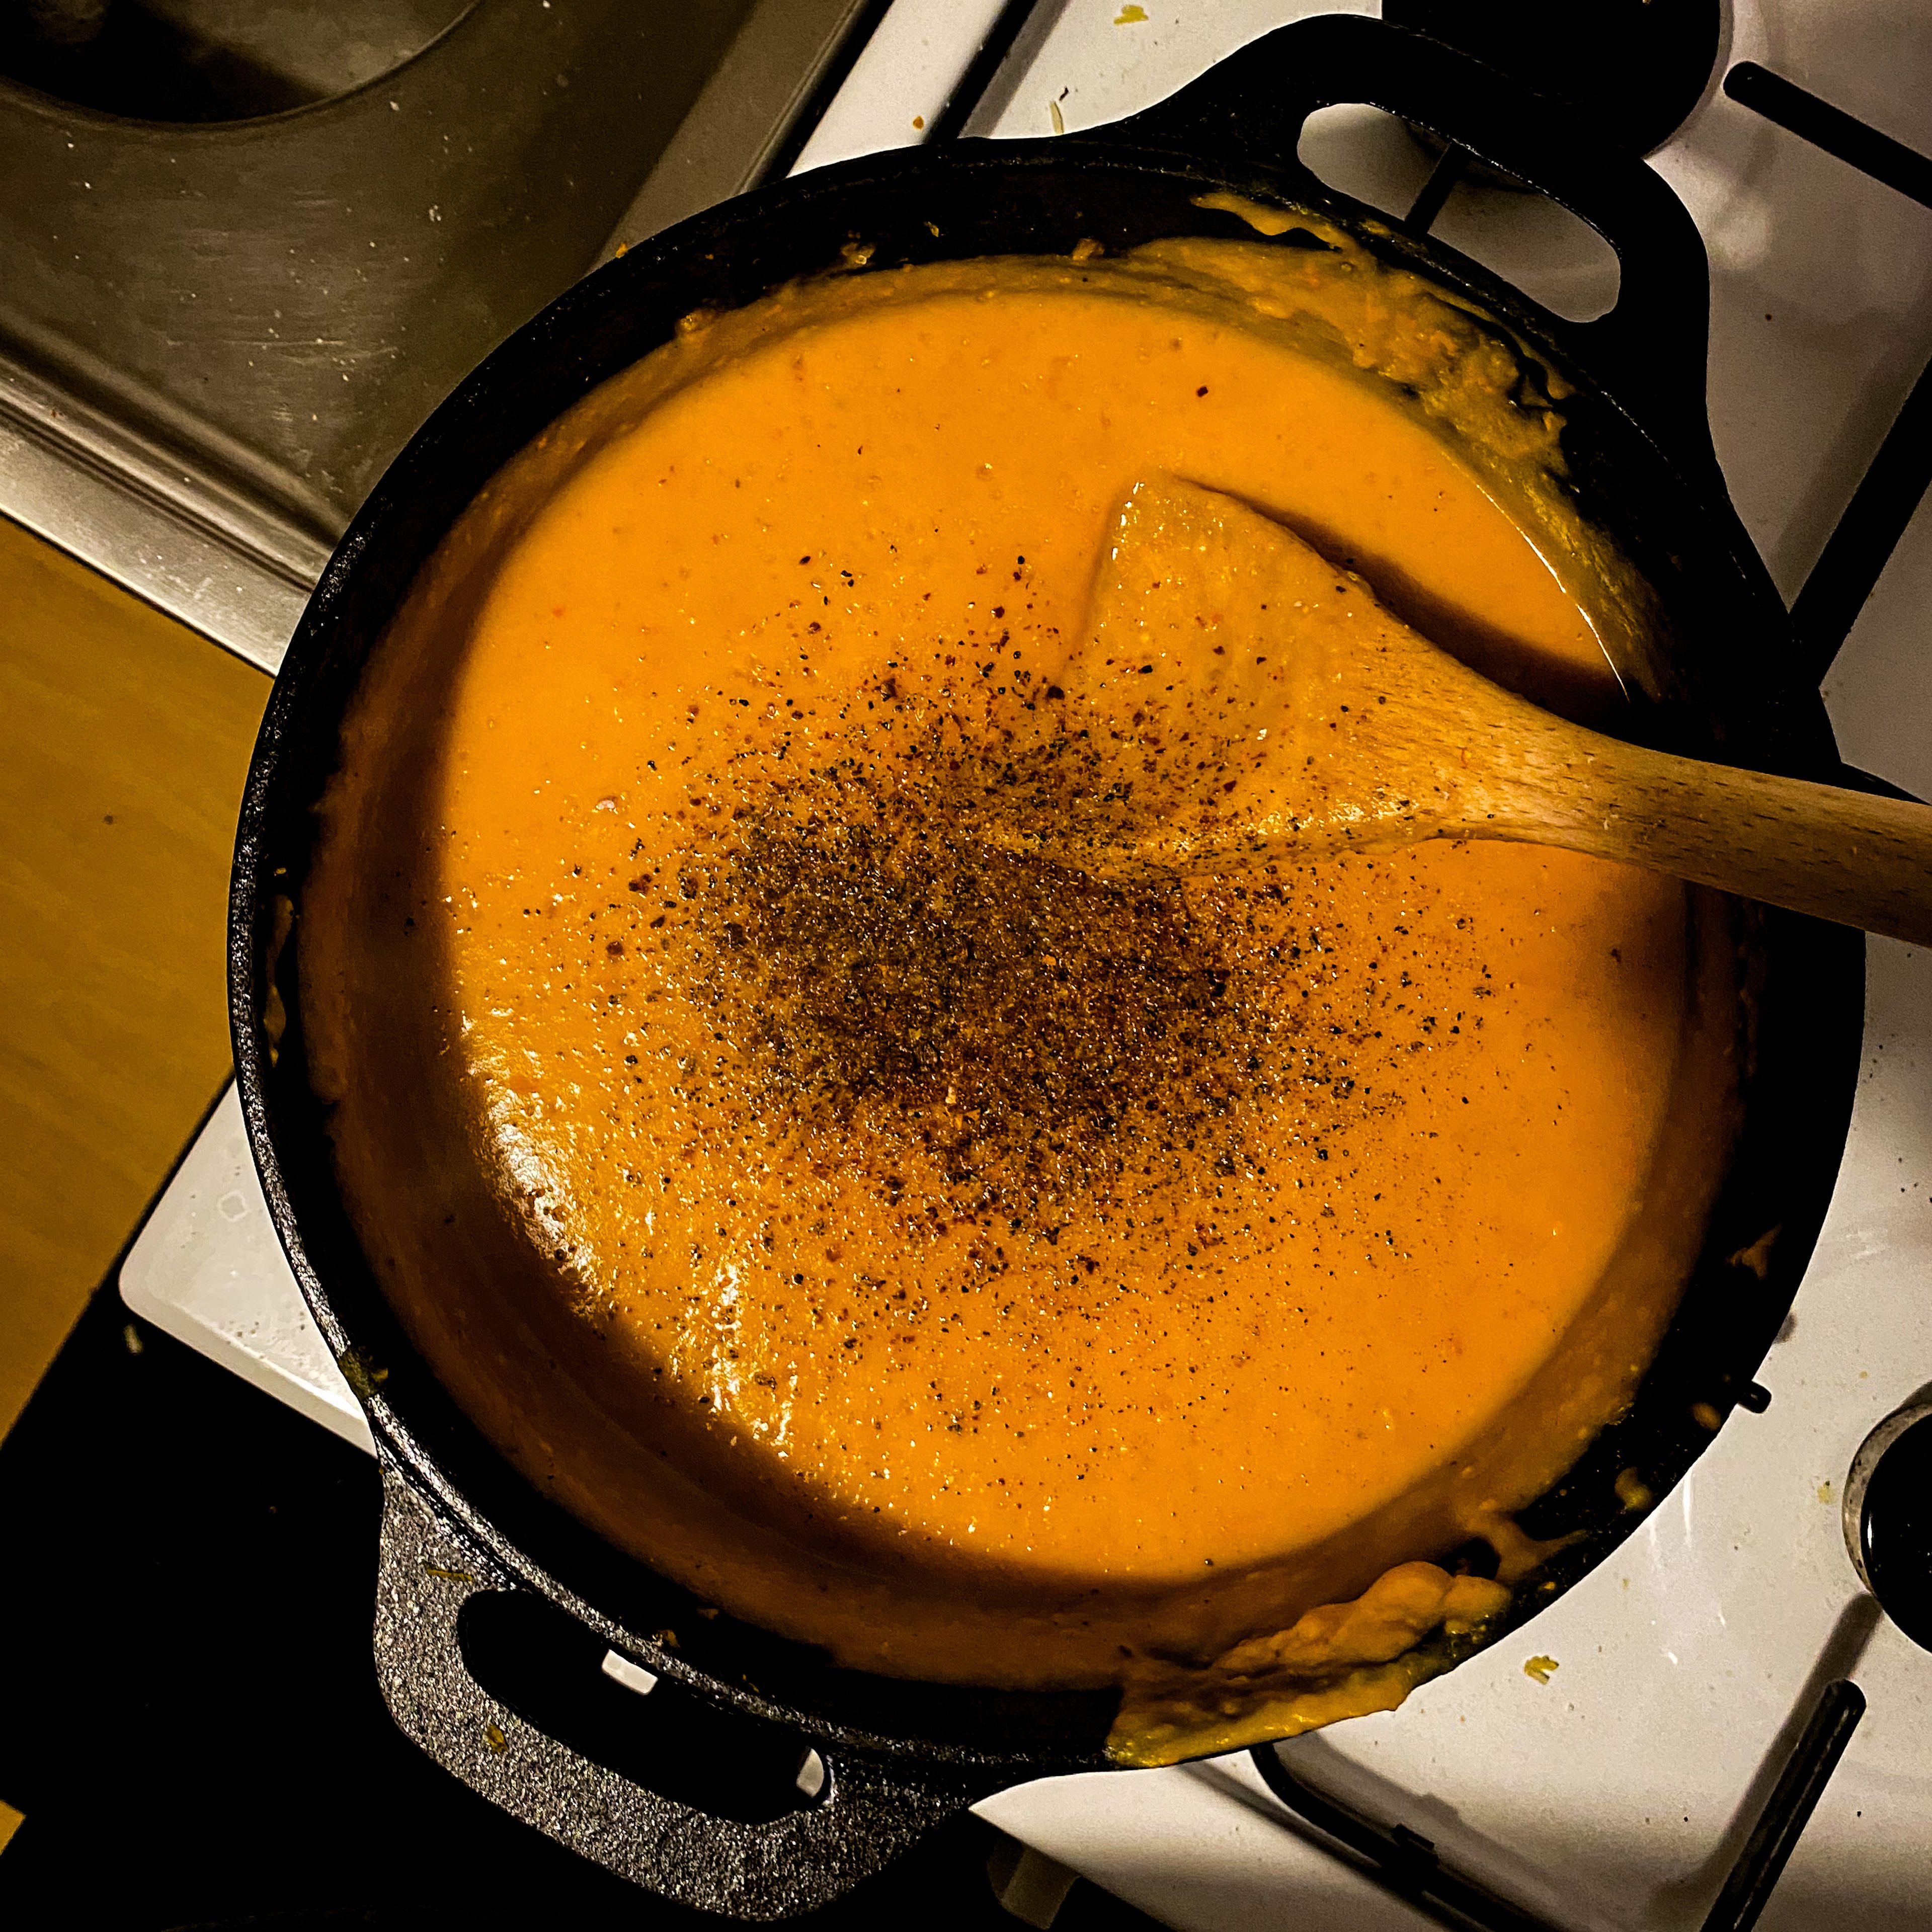 Wenn alle Zutaten schön weichgekocht sind gib die Kokosmilch dazu und dann pürieren. Abschmecken und schärfen wie man Lust und Laune hat (und wie man es halt verträgt). Lasse es dann nochmal aufkochen und schon is die super cremige und würzige Suppe fertig.